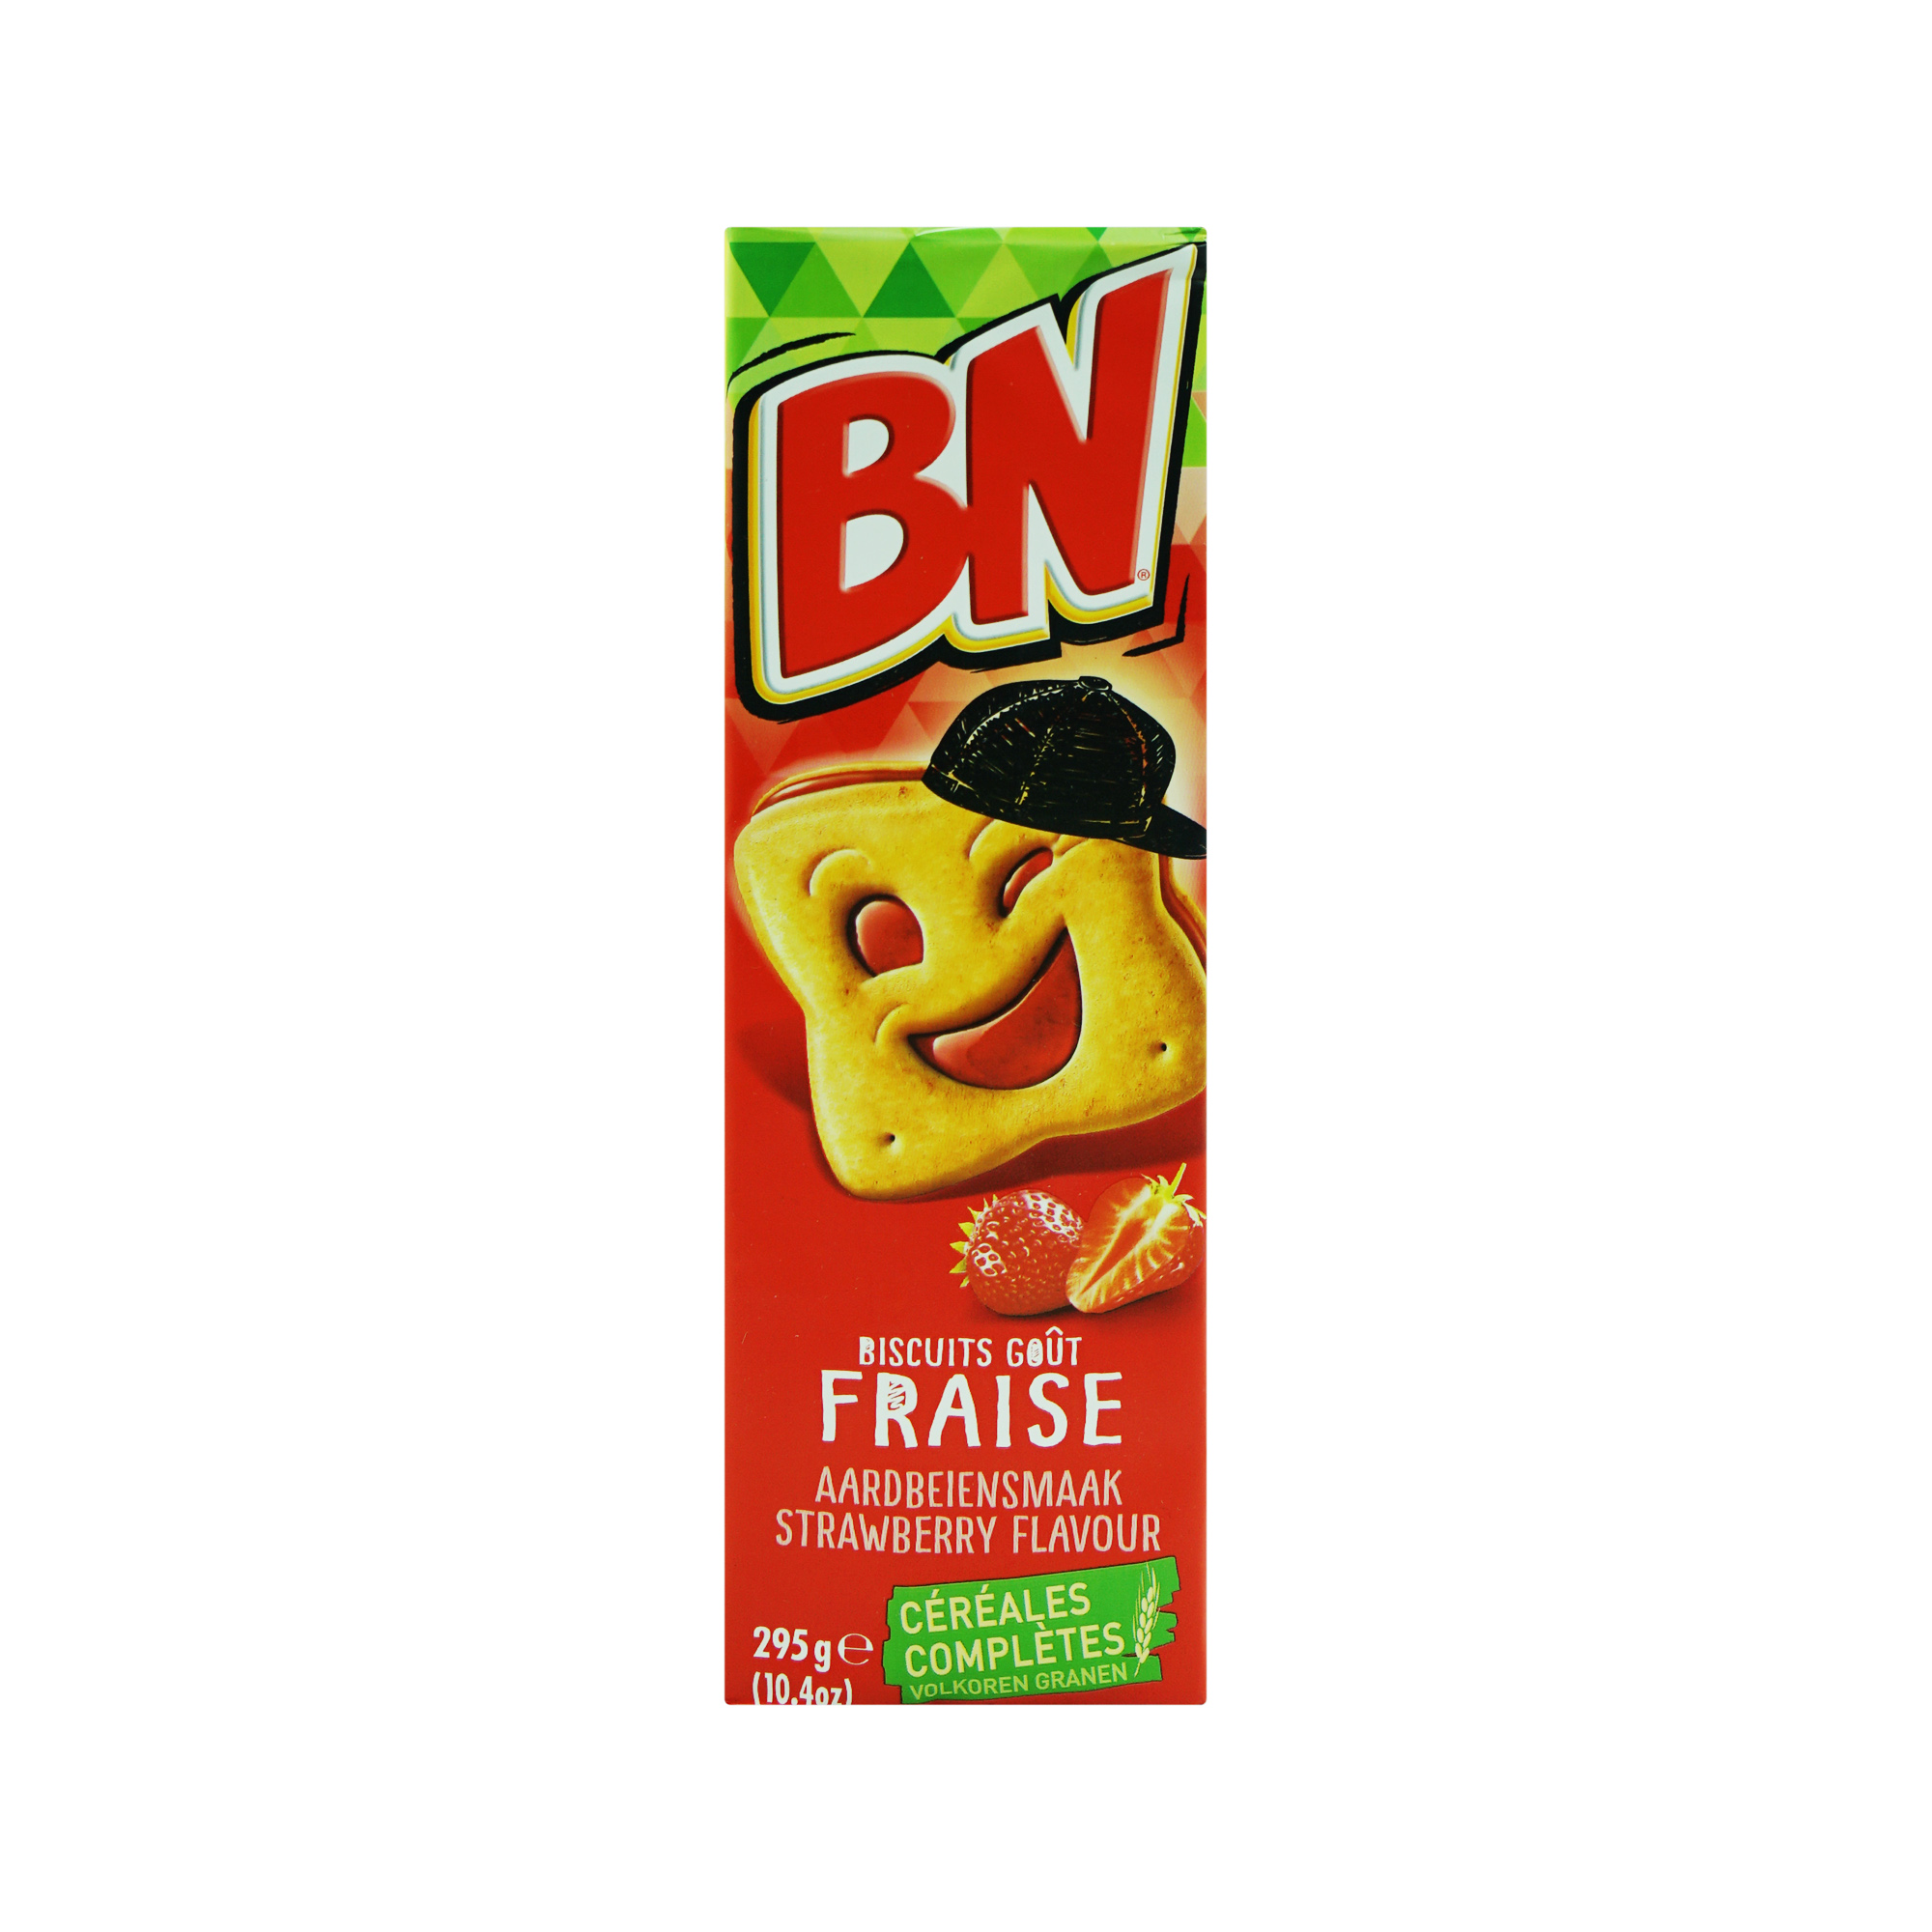 BN Biscuit Strawberry Flavour (295g)